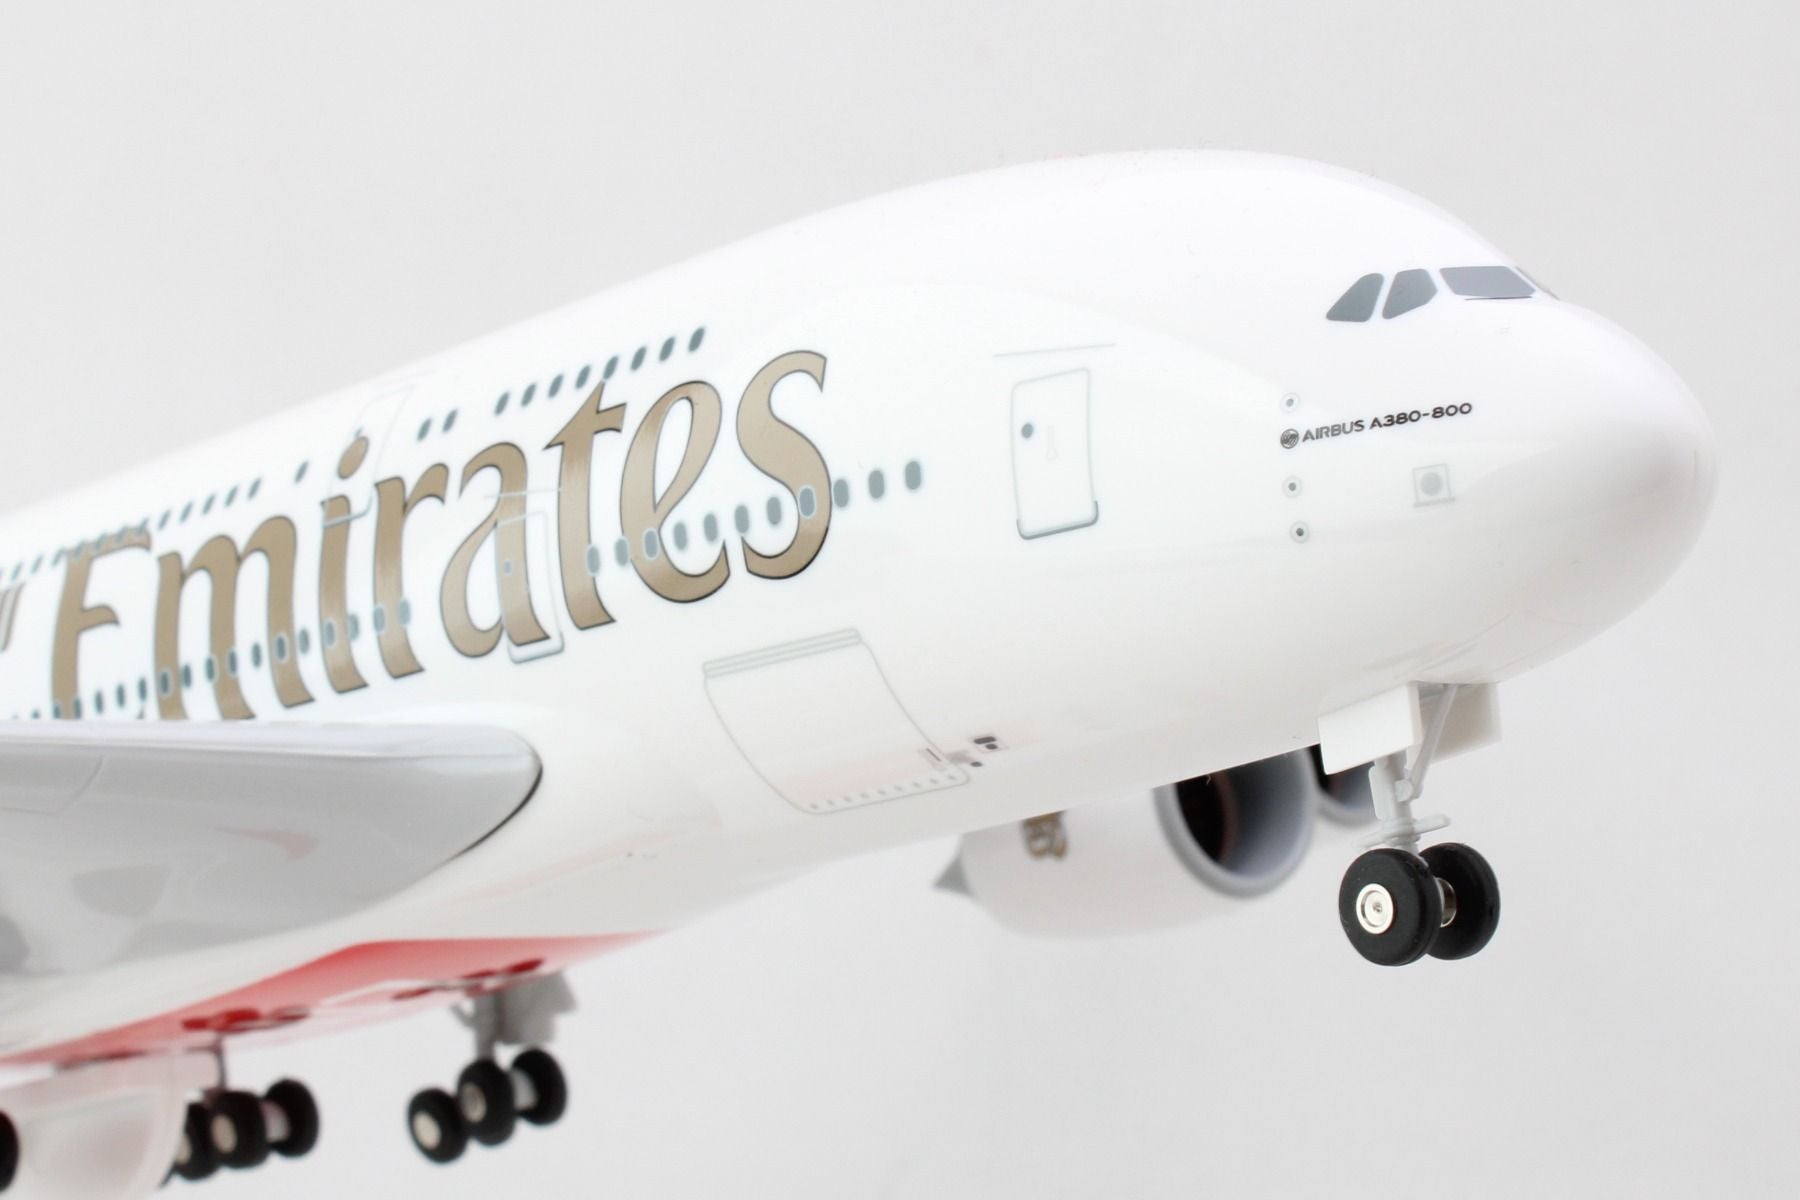 半額特売SKYMARKS 1/200 エミレーツ航空 A380 A6-EEU ドバイ万博 民間航空機